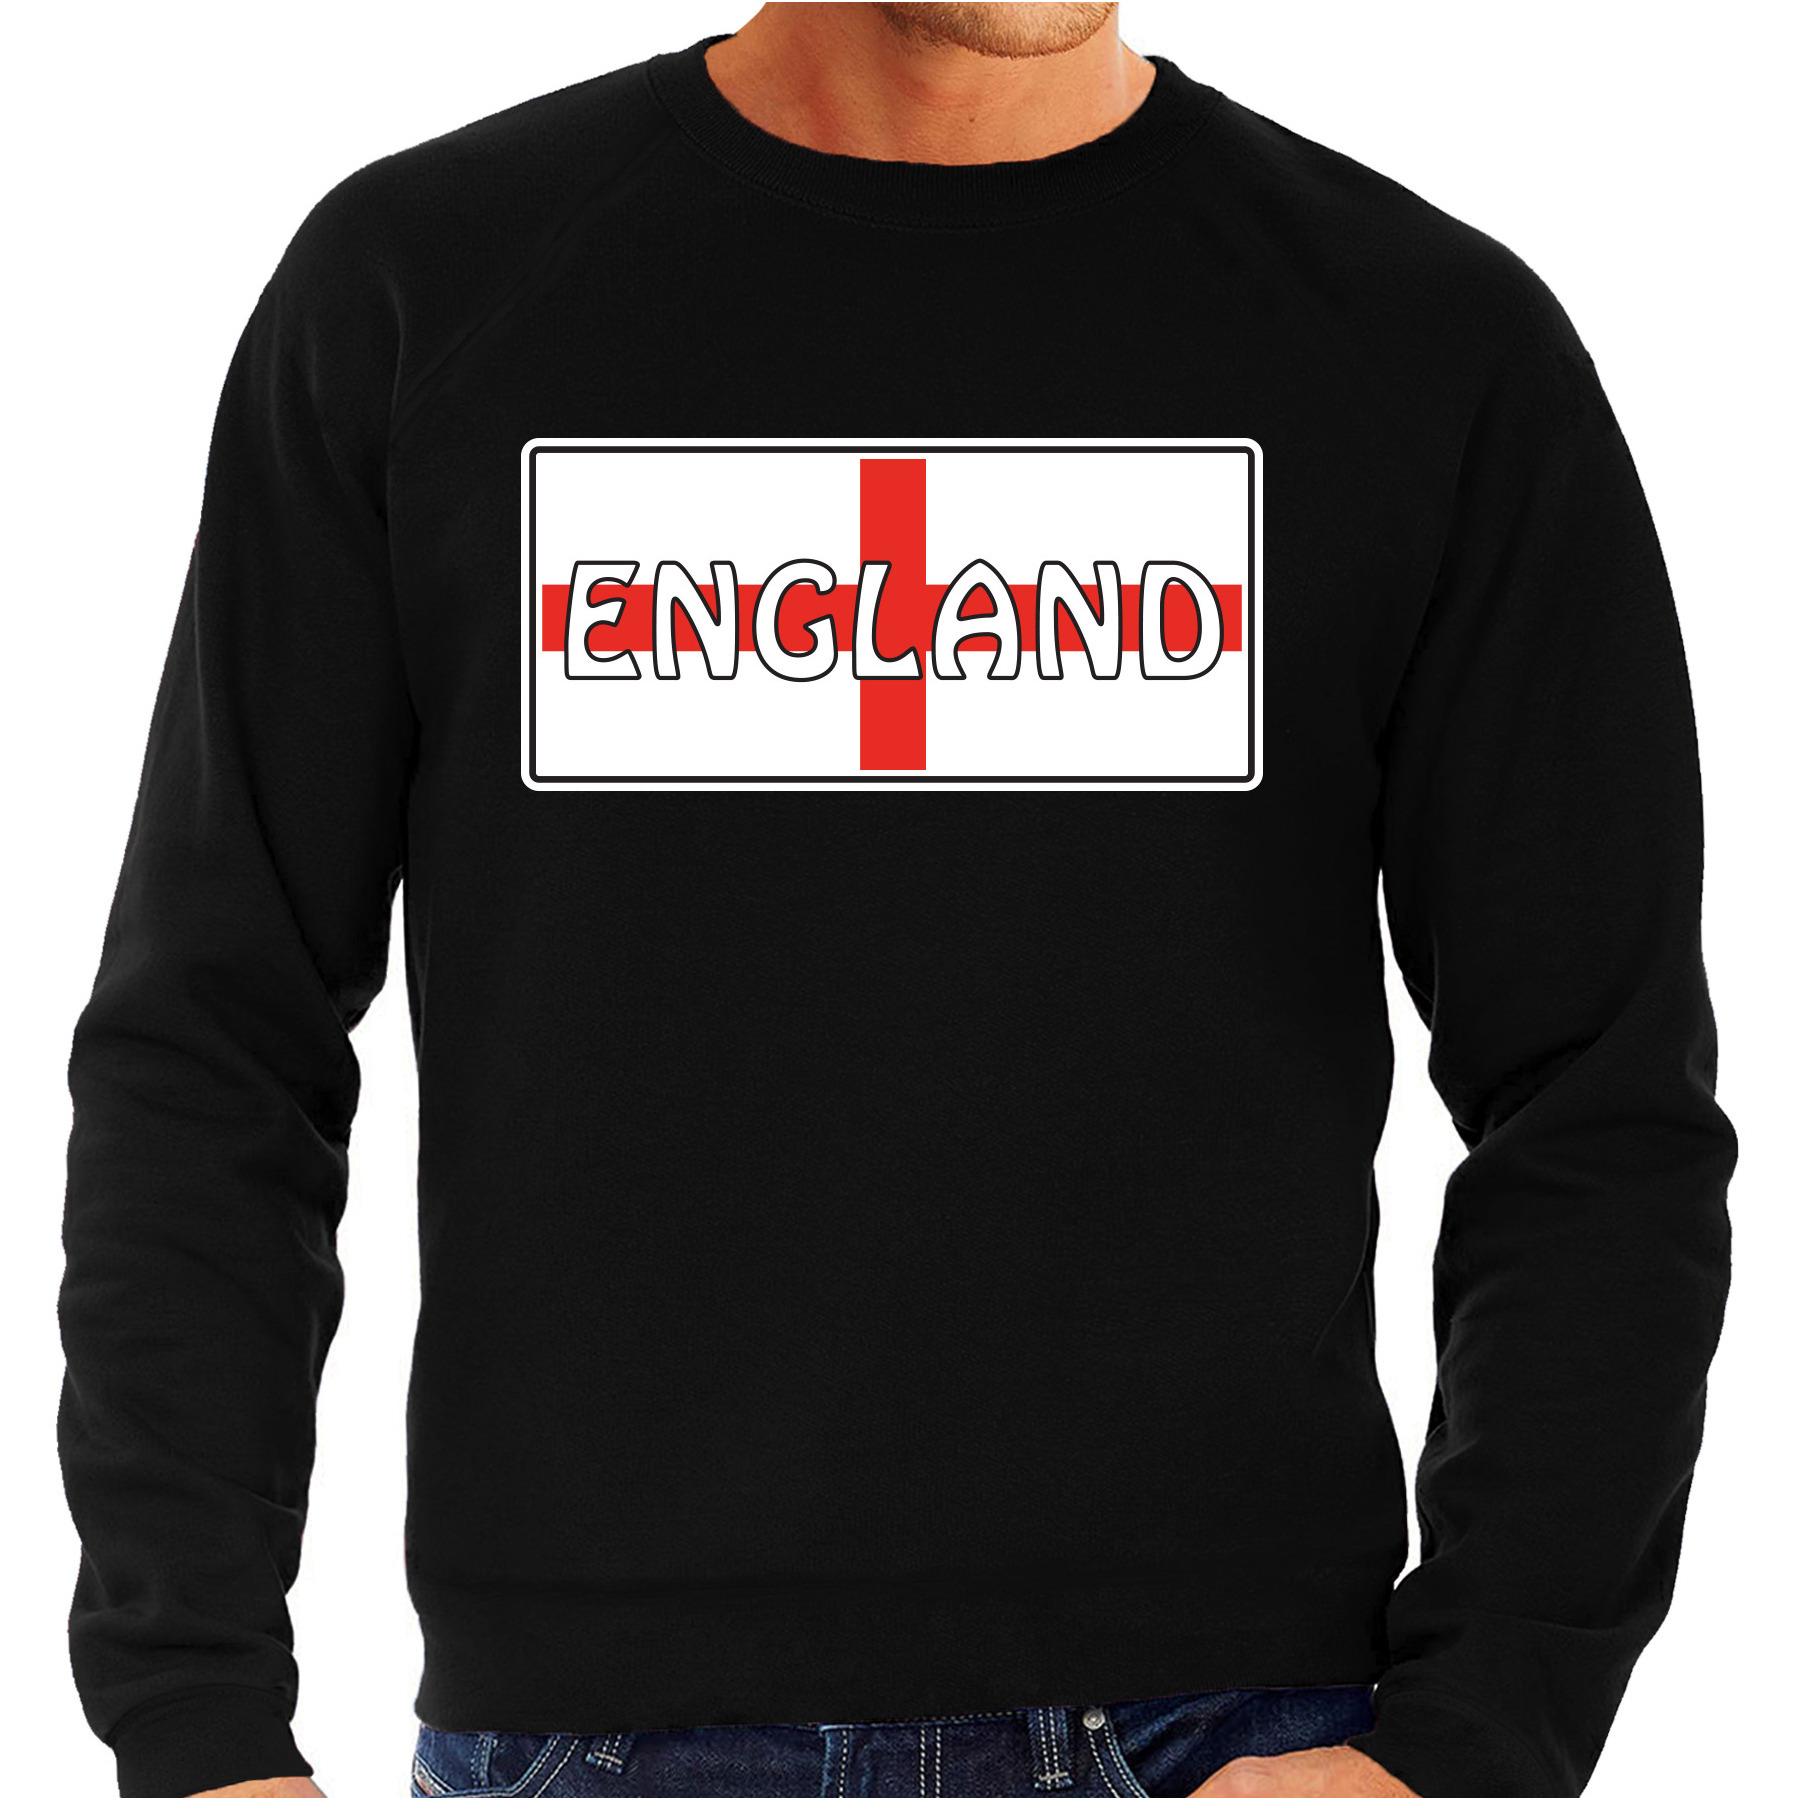 Engeland - England landen sweater zwart heren